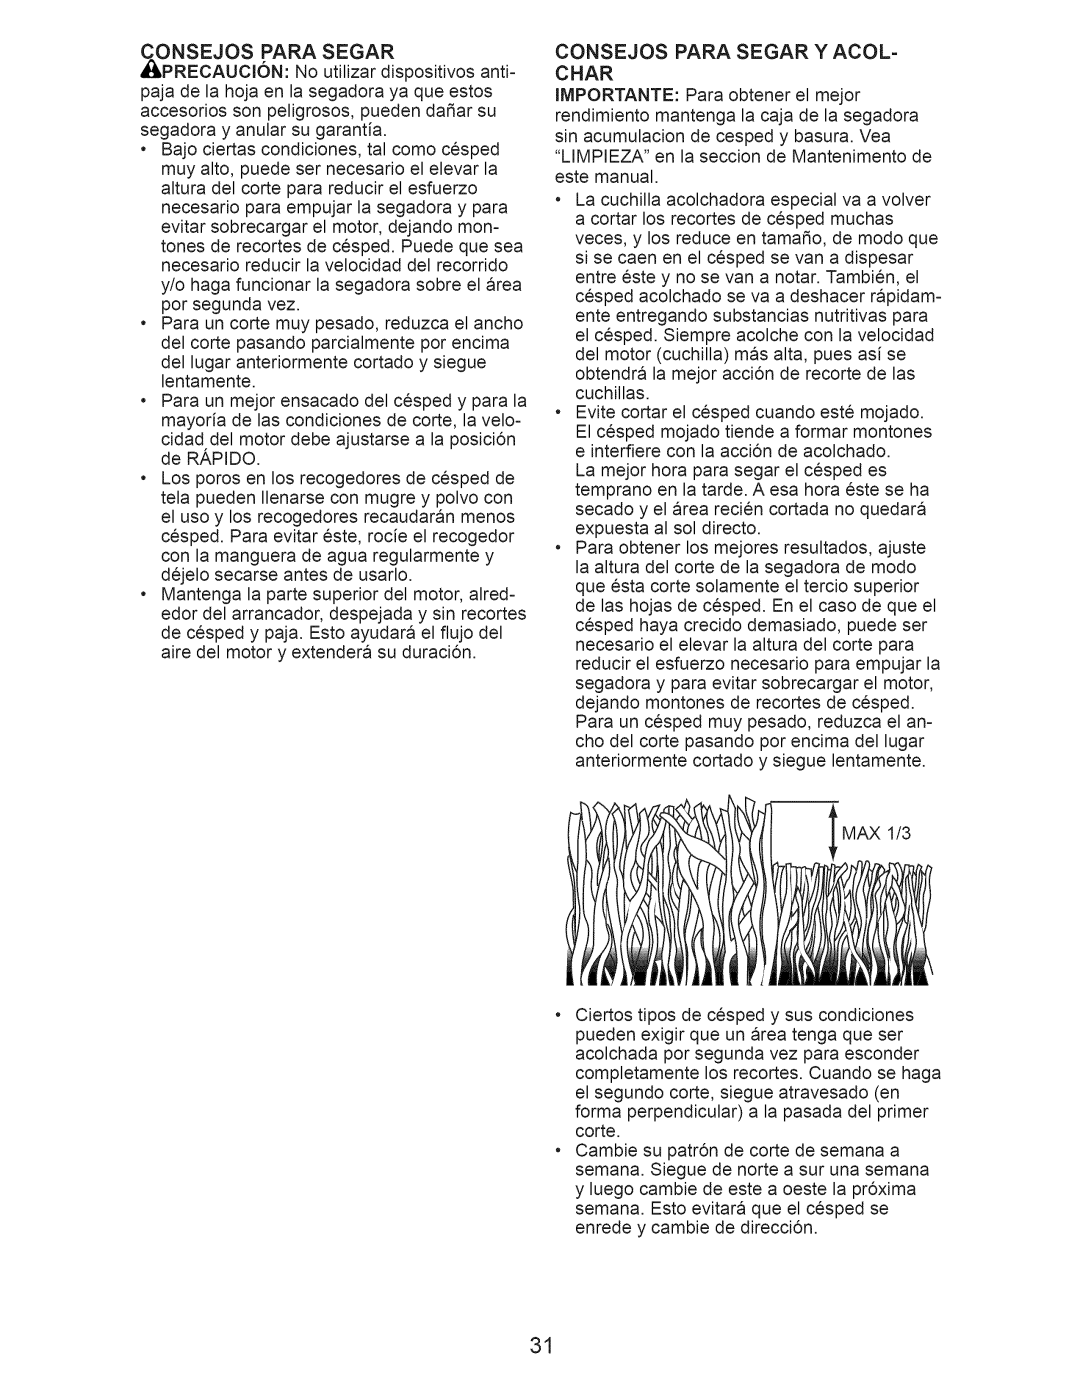 Craftsman 917.376242 manual Onsejos Para Segar, Consejos Para Segar Y ACOL- Char 